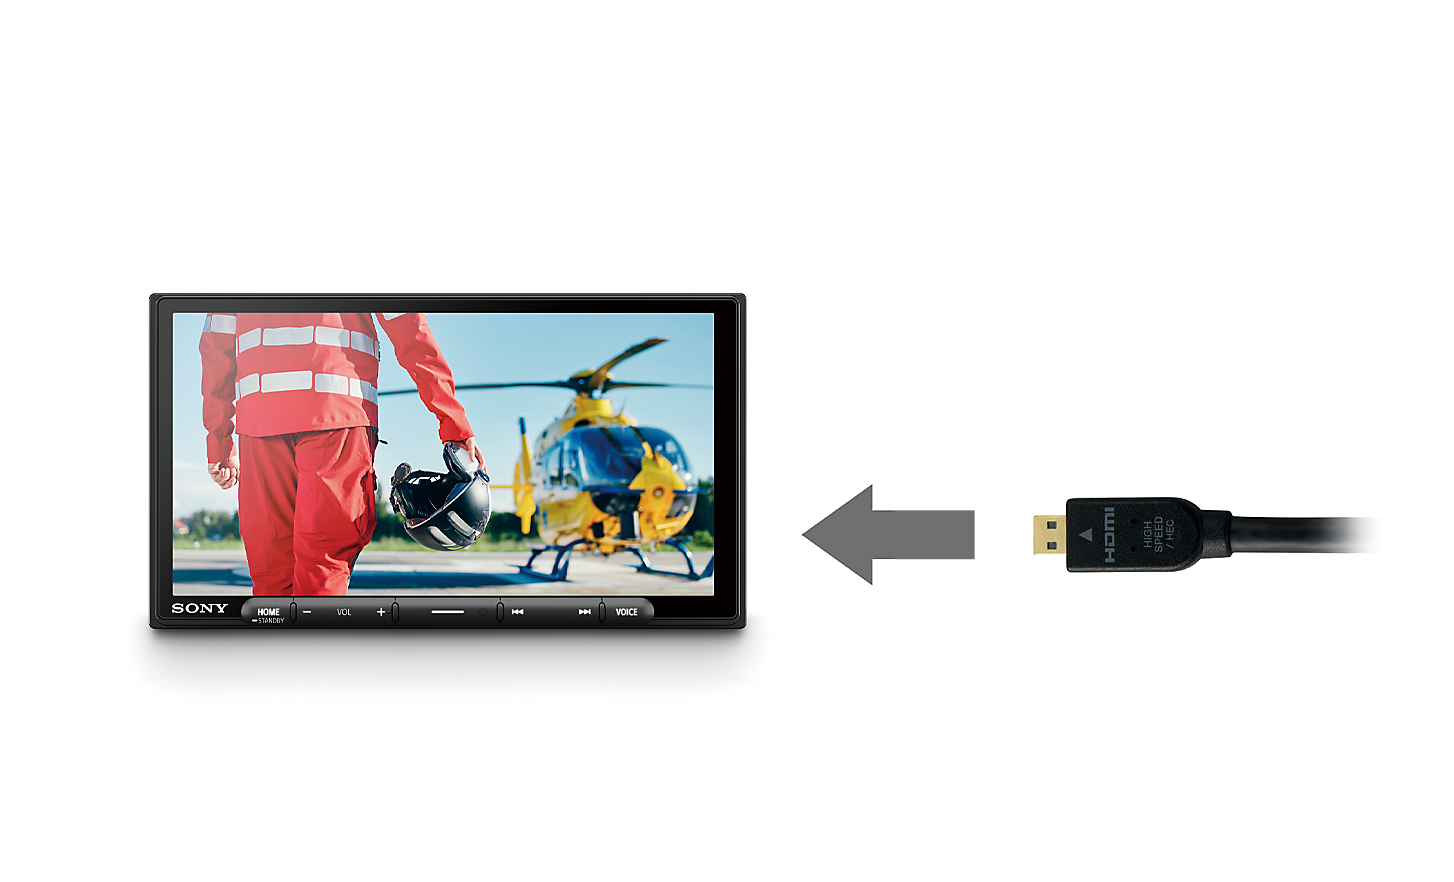 Εικόνα ενός καλωδίου HDMI με ένα βέλος που δείχνει προς το XAV-AX6050 με έναν πιλότο και ένα ελικόπτερο στην οθόνη